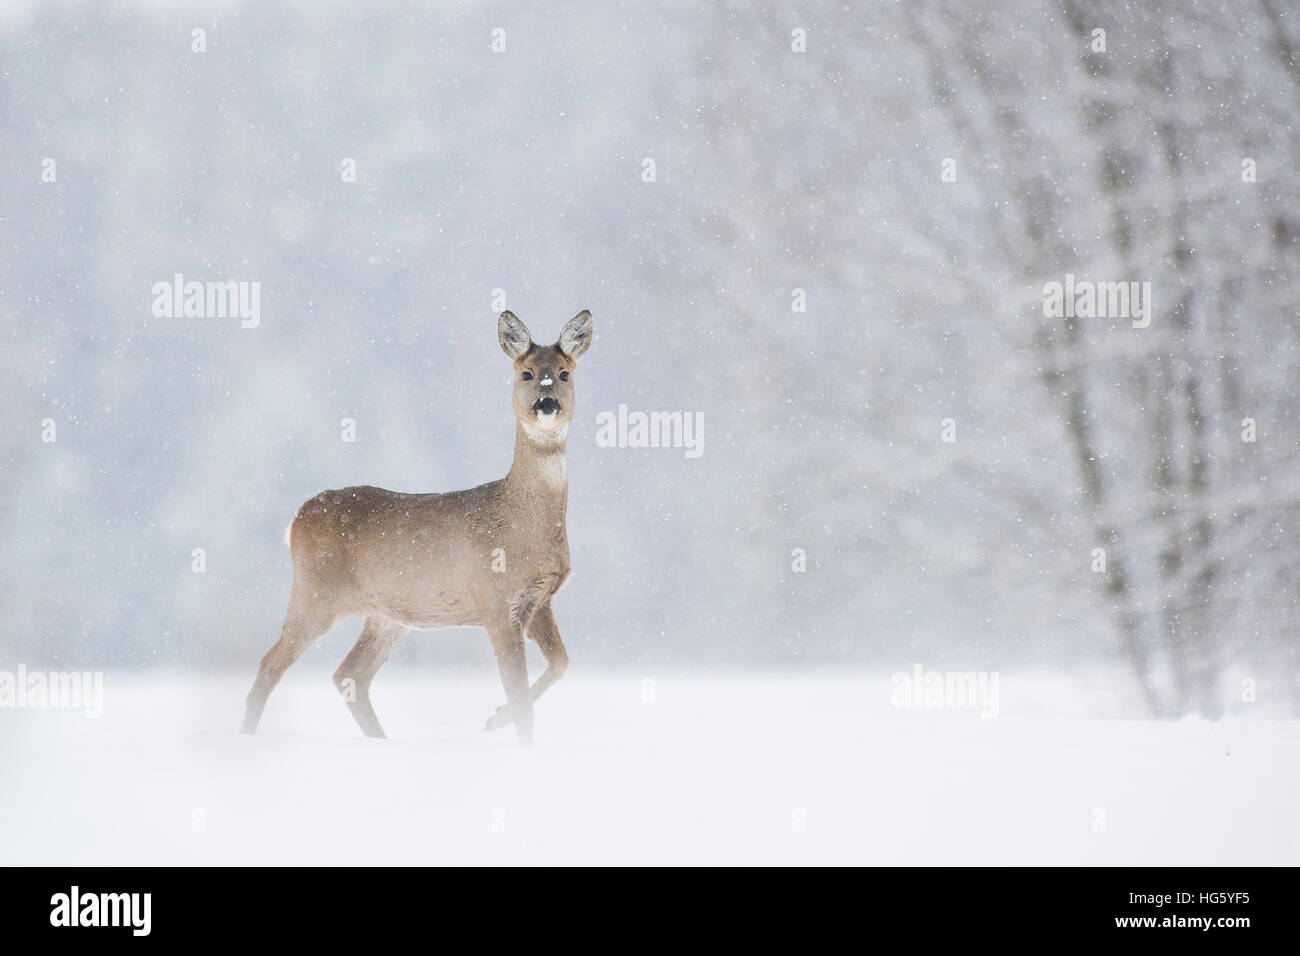 Roe deer in snowfall Stock Photo